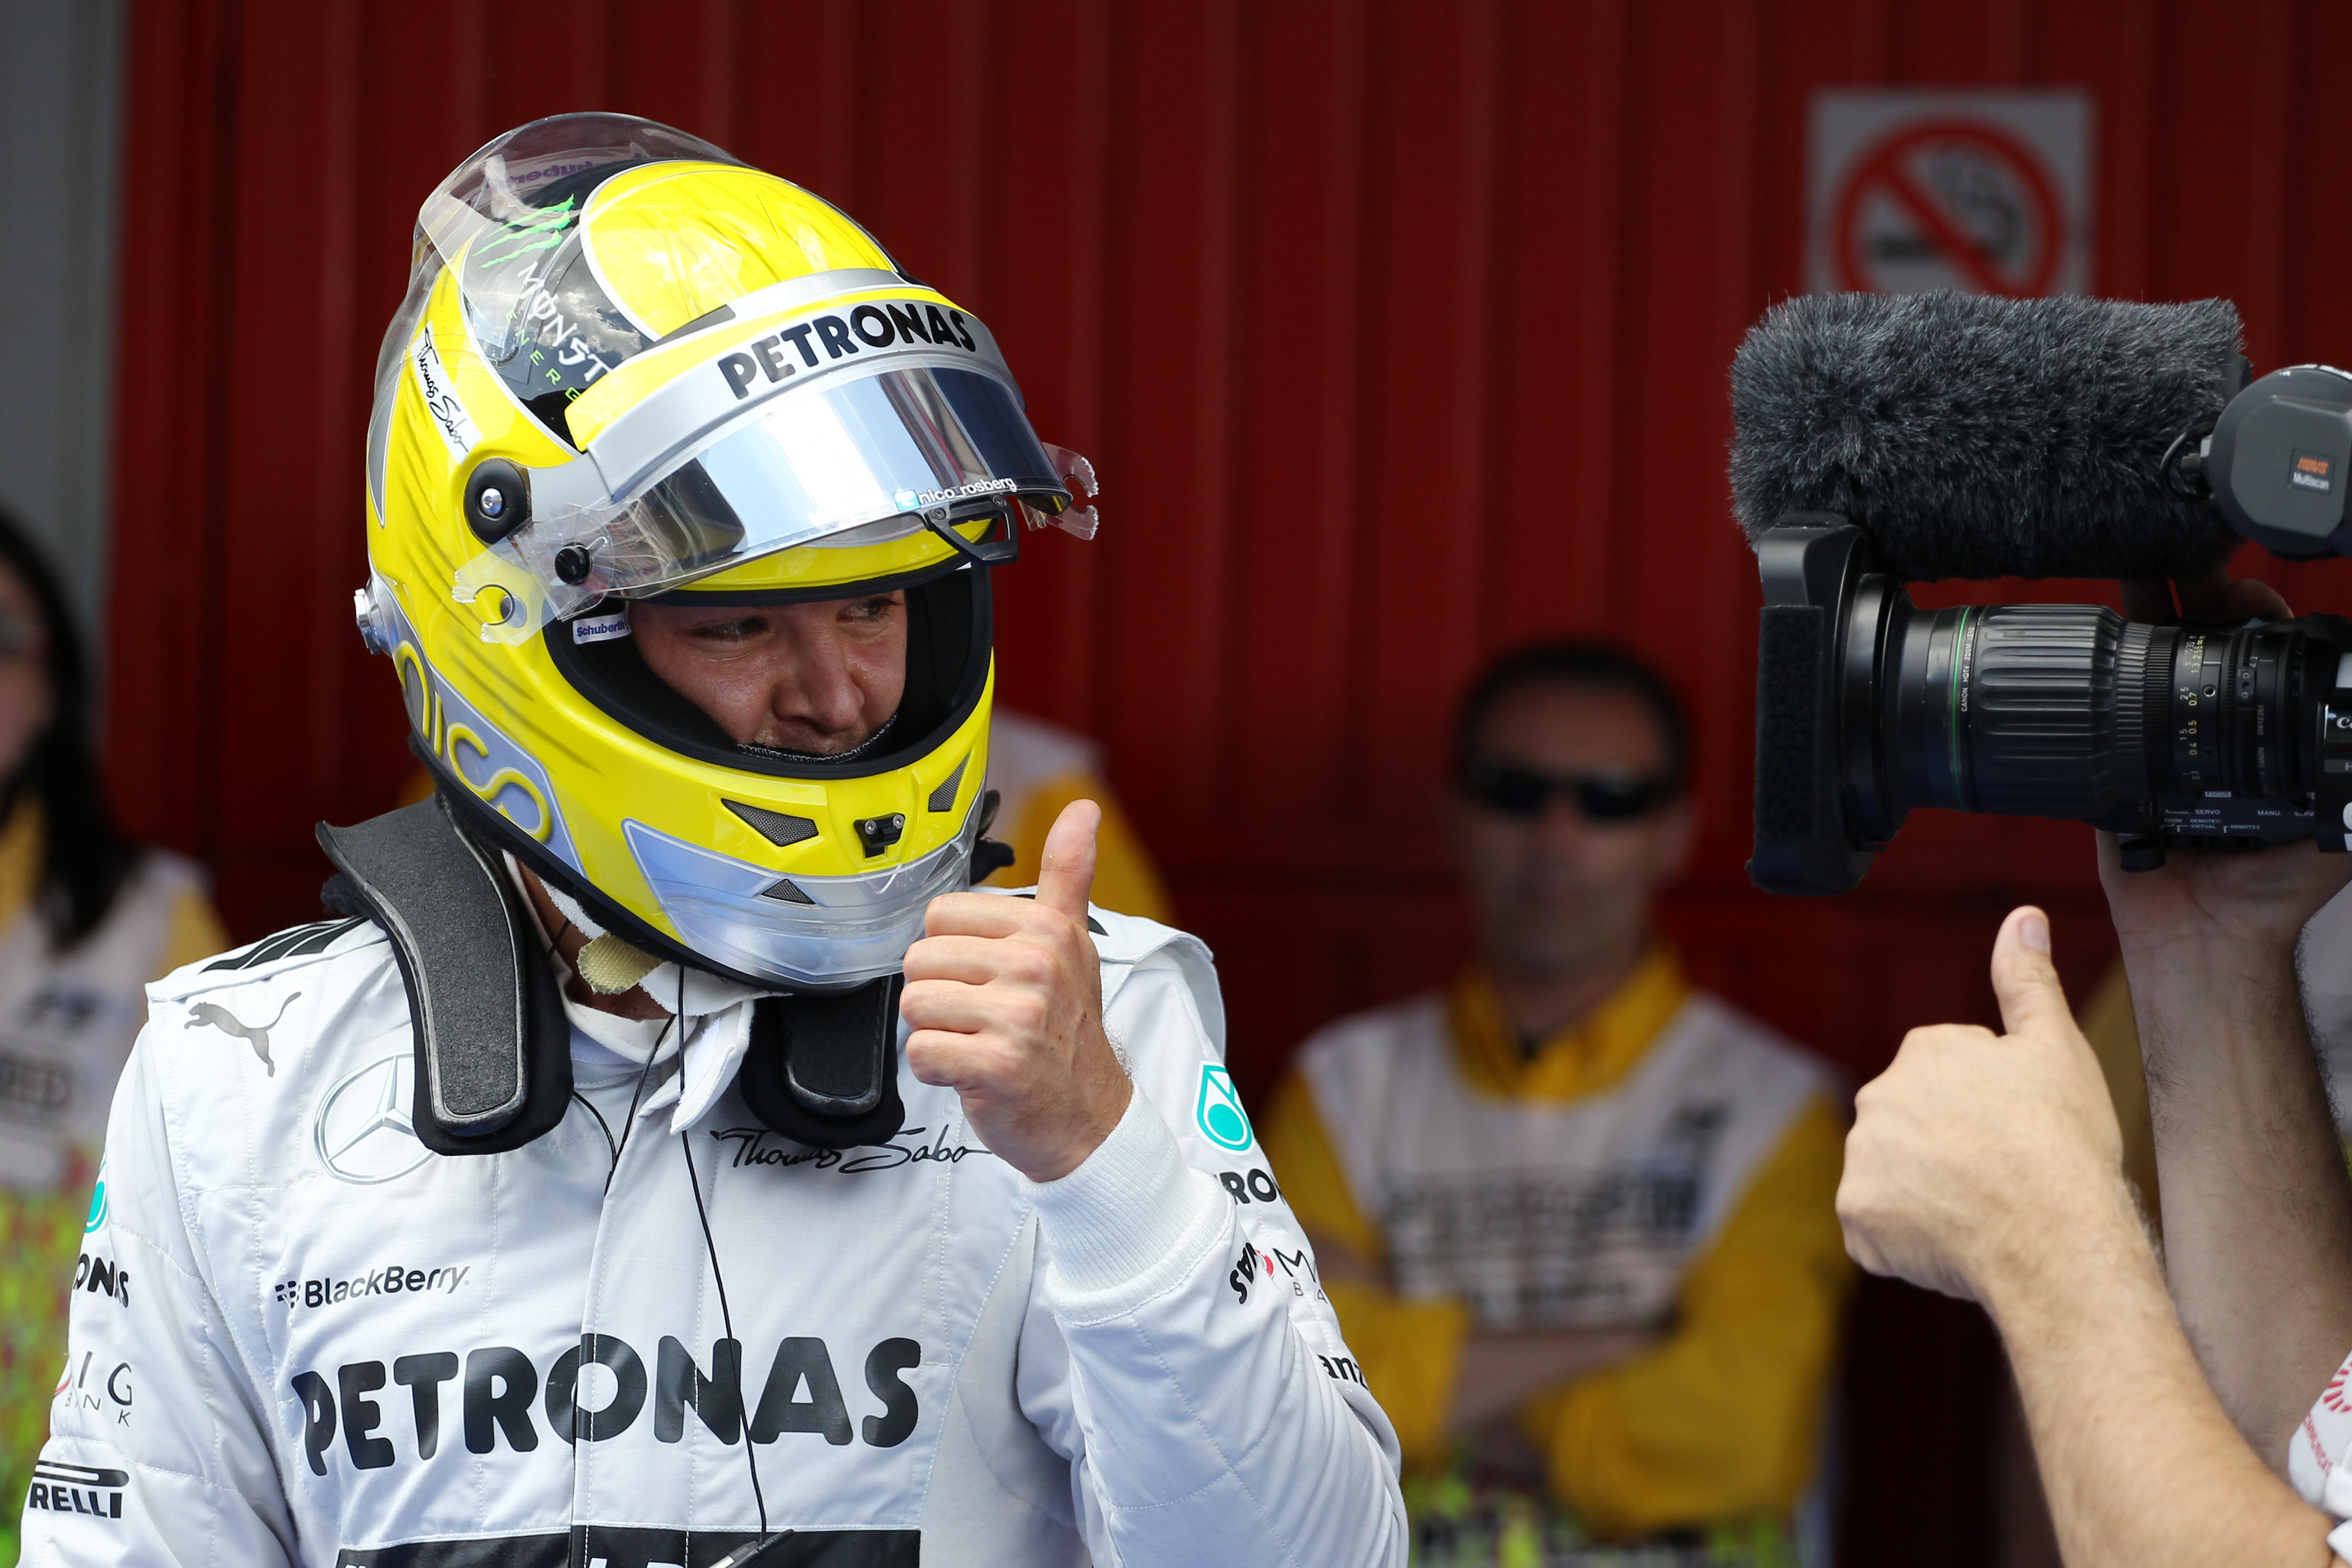 Polesitter Rosberg: ‘Bandenslijtage blijft uitdaging’